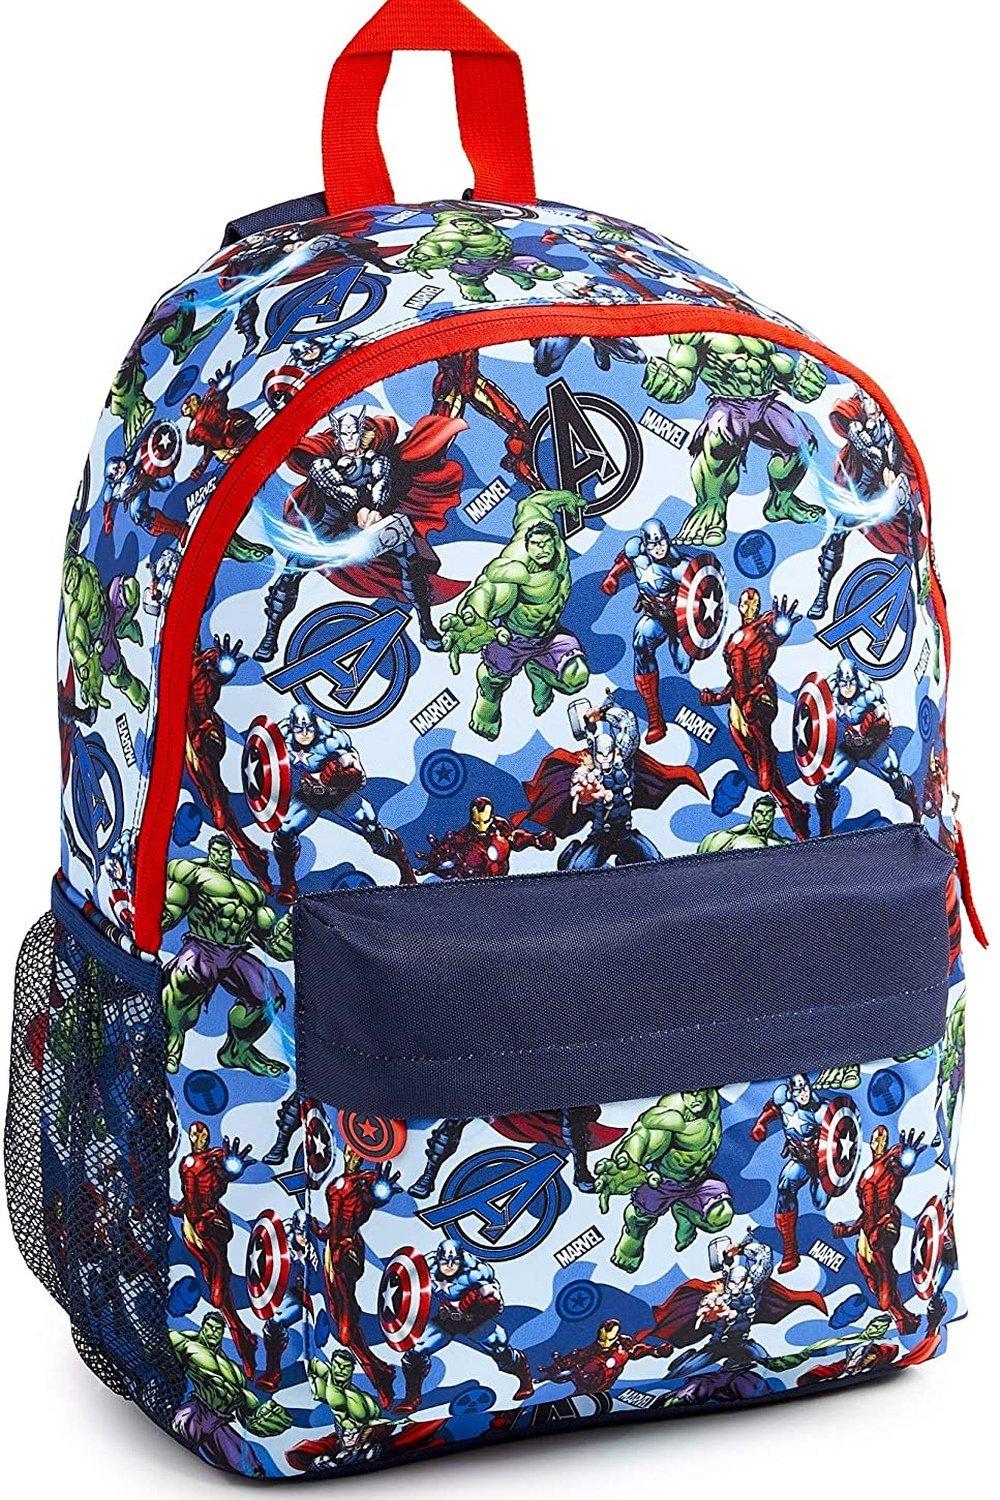 Большой рюкзак Avengers Superheros Marvel, синий рюкзак marvel guardians chibi